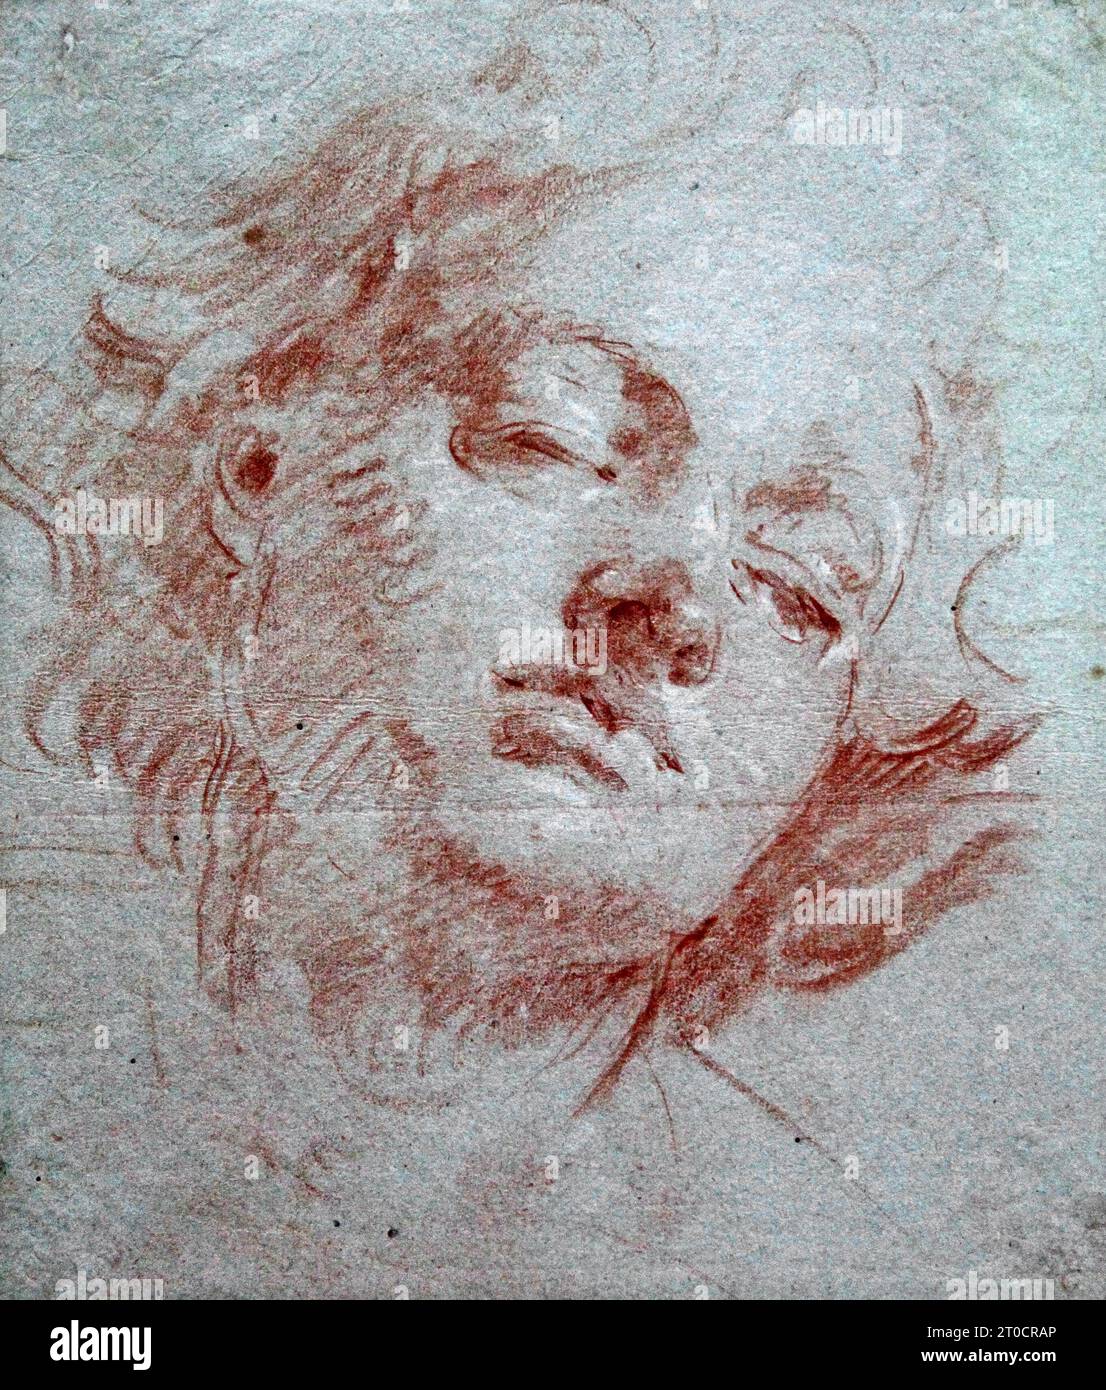 Kopf einer Jugend mit geschlossenen Augen (ca. 1750) von Giovanni Battista Tiepolo oder Giambattista Tiepolo (1696-1770). Italienischer Maler. Rokoko-Stil. Stockfoto